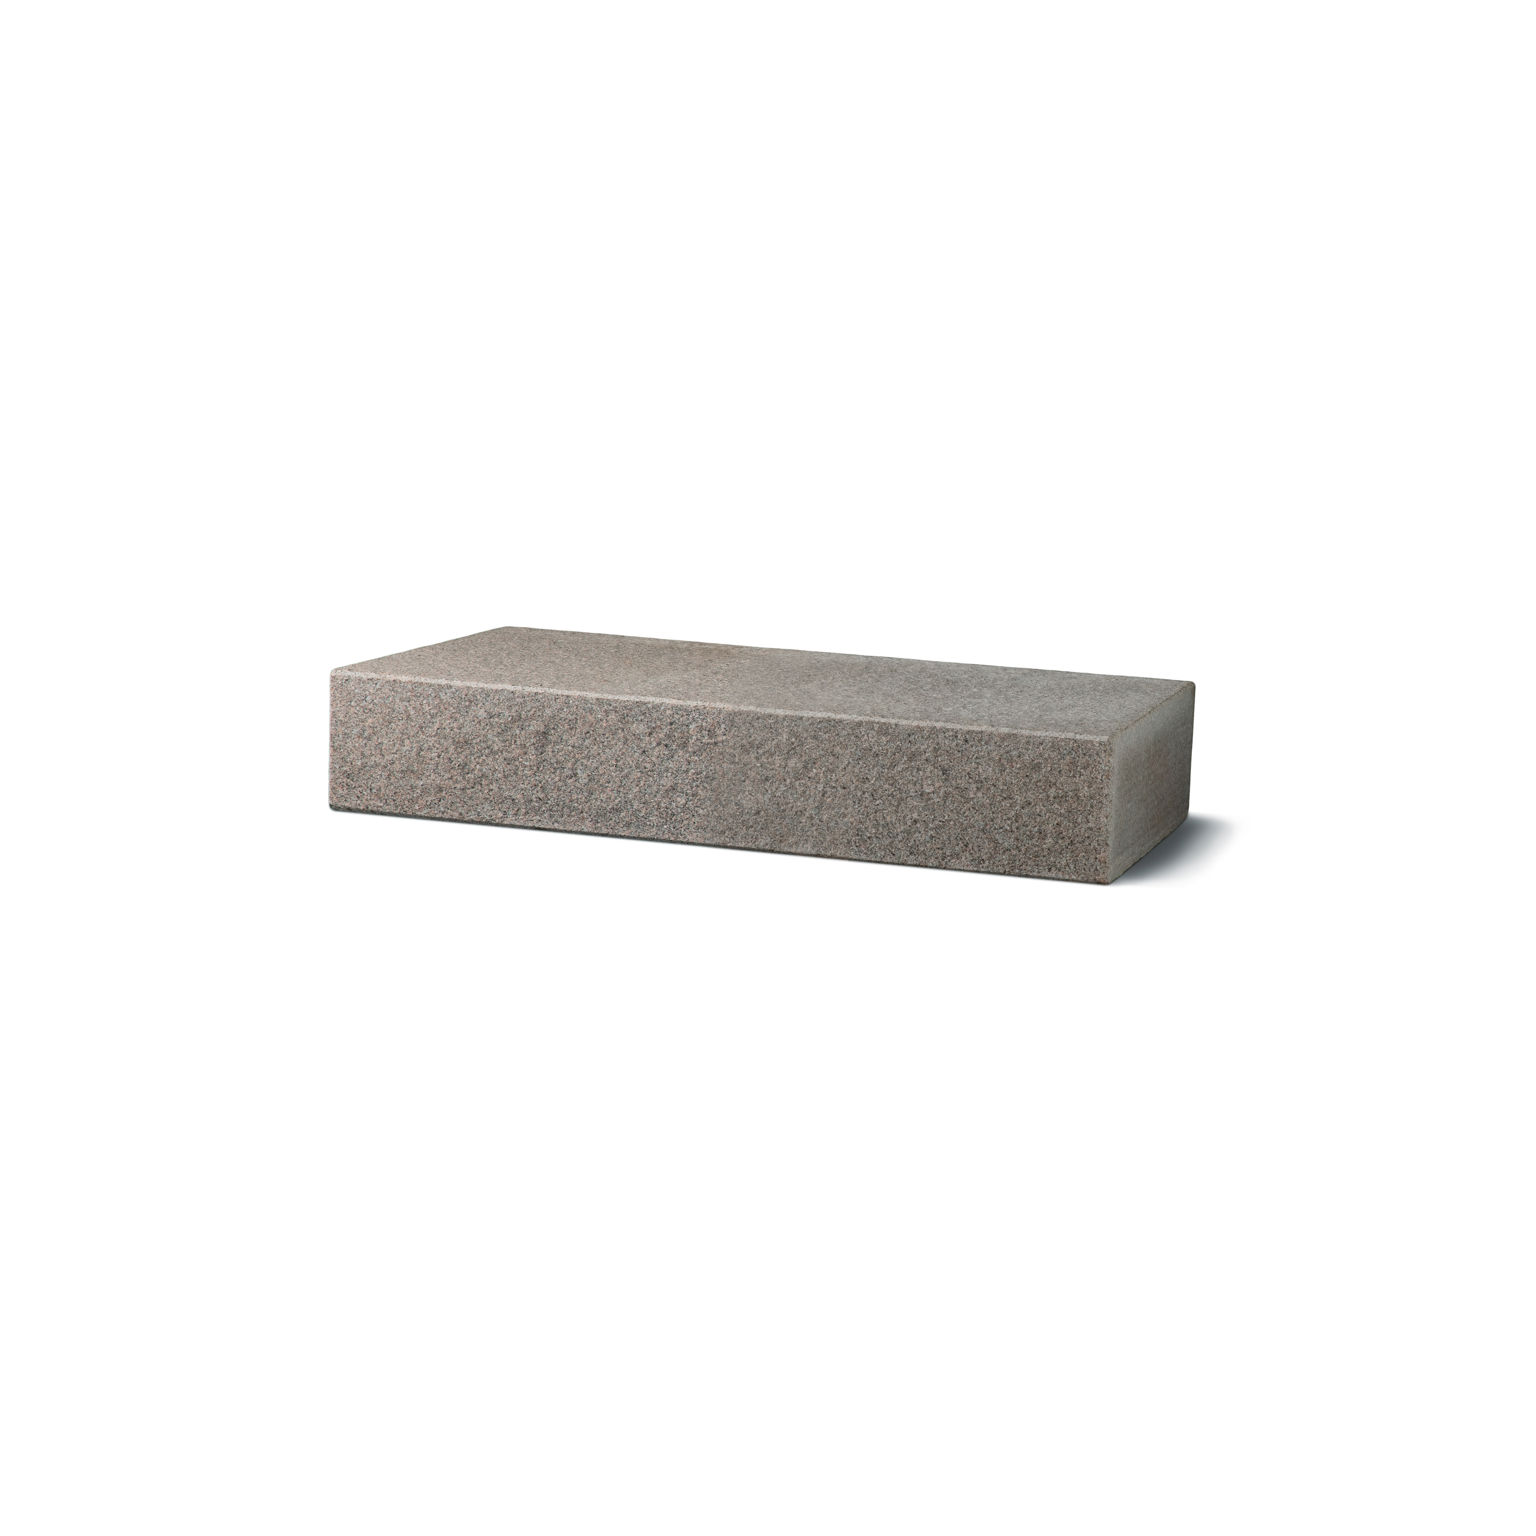 Produktbild på blocksteg i granit med flammad topp och front;i måtten 1050x350x150 mm och i färgen Bohus grå.